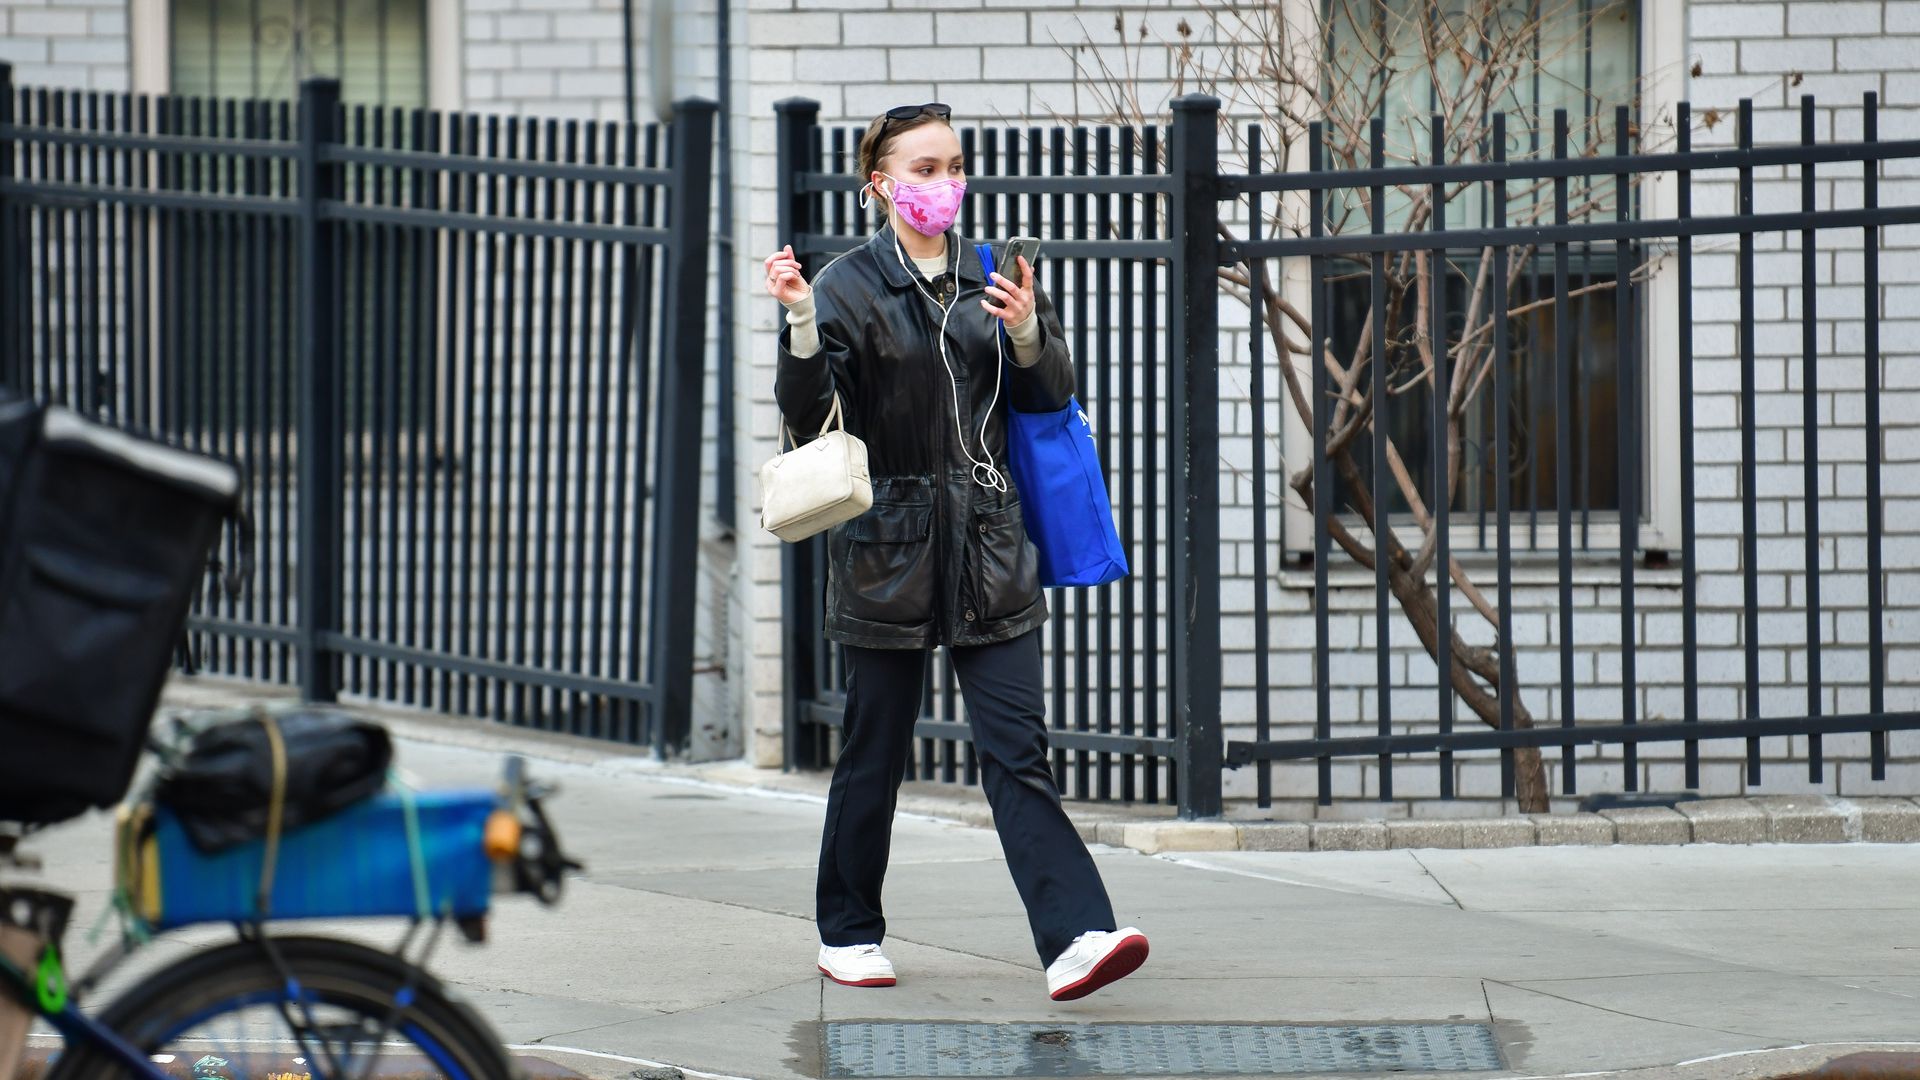 A woman walking down a city street sidewalk wearing wired headphones.